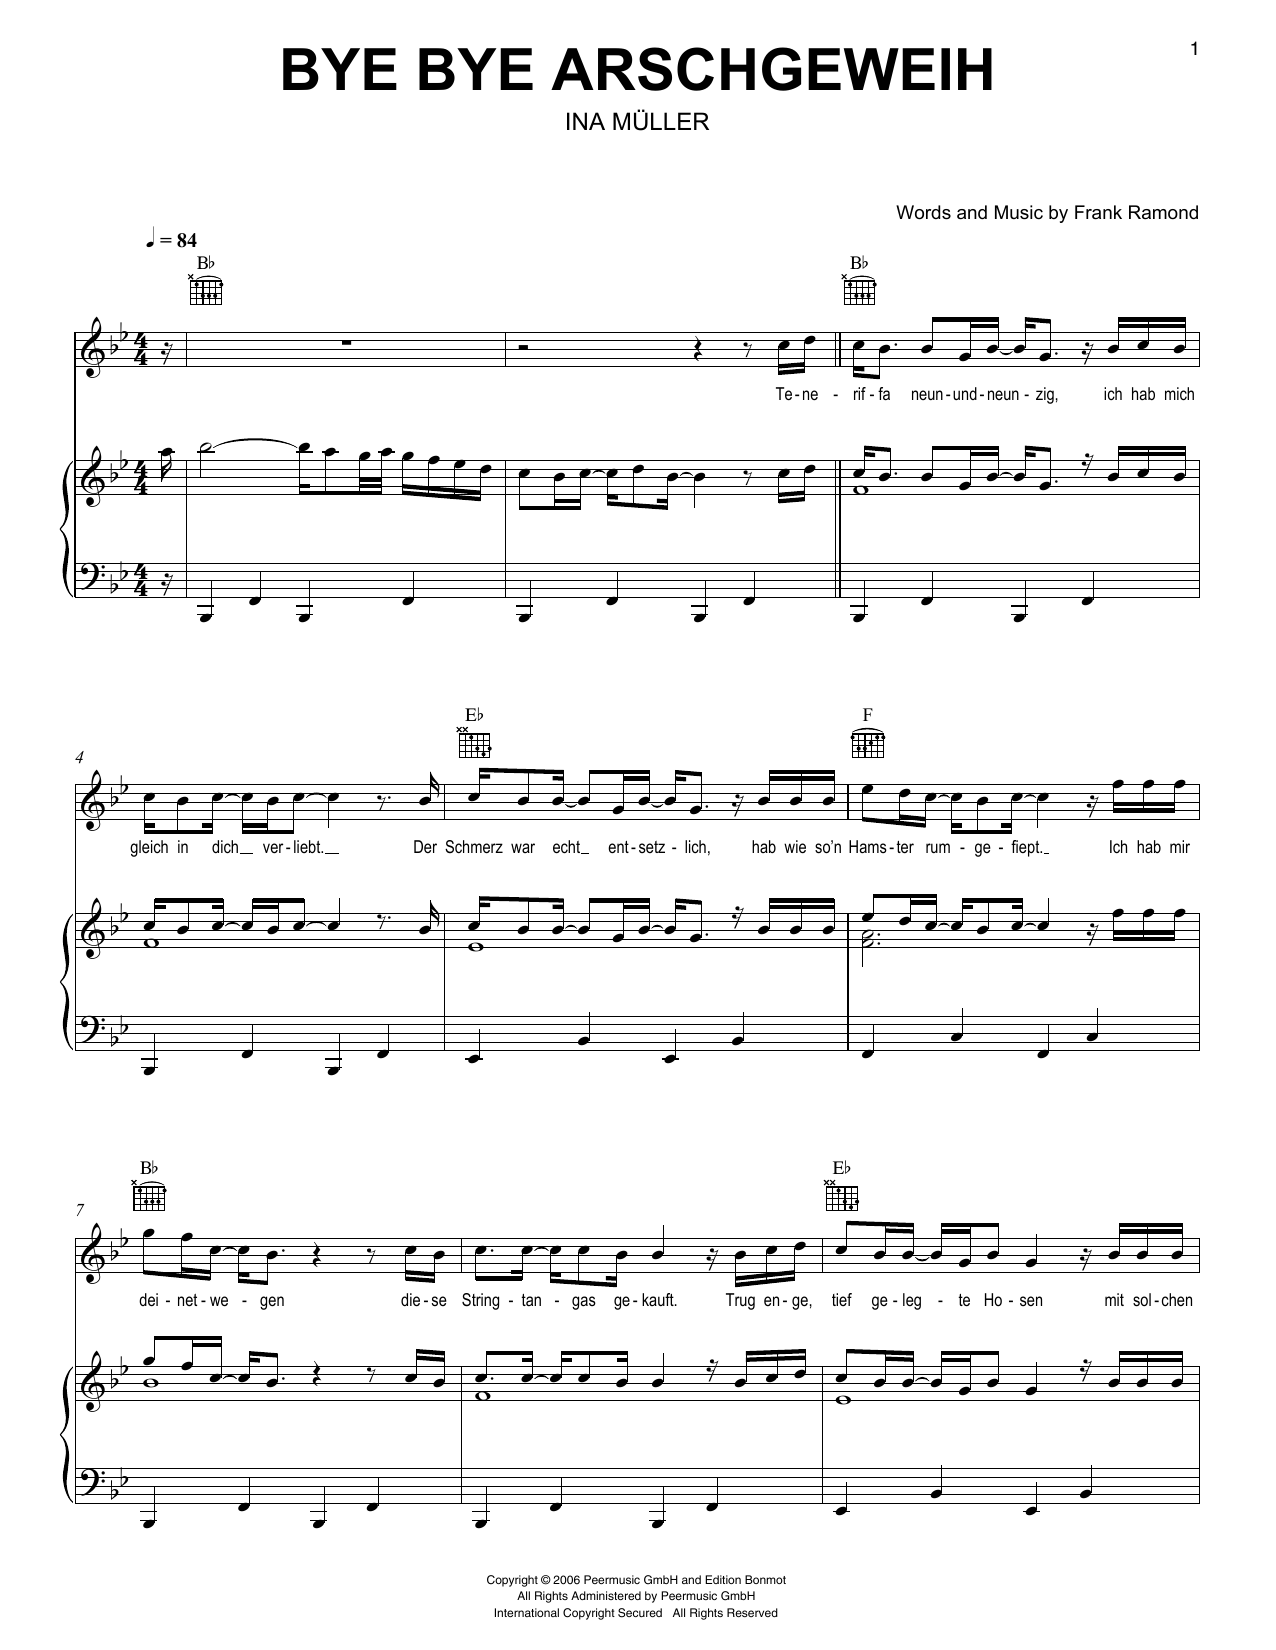 Ina Müller Bye Bye Arschgeweih sheet music notes printable PDF score